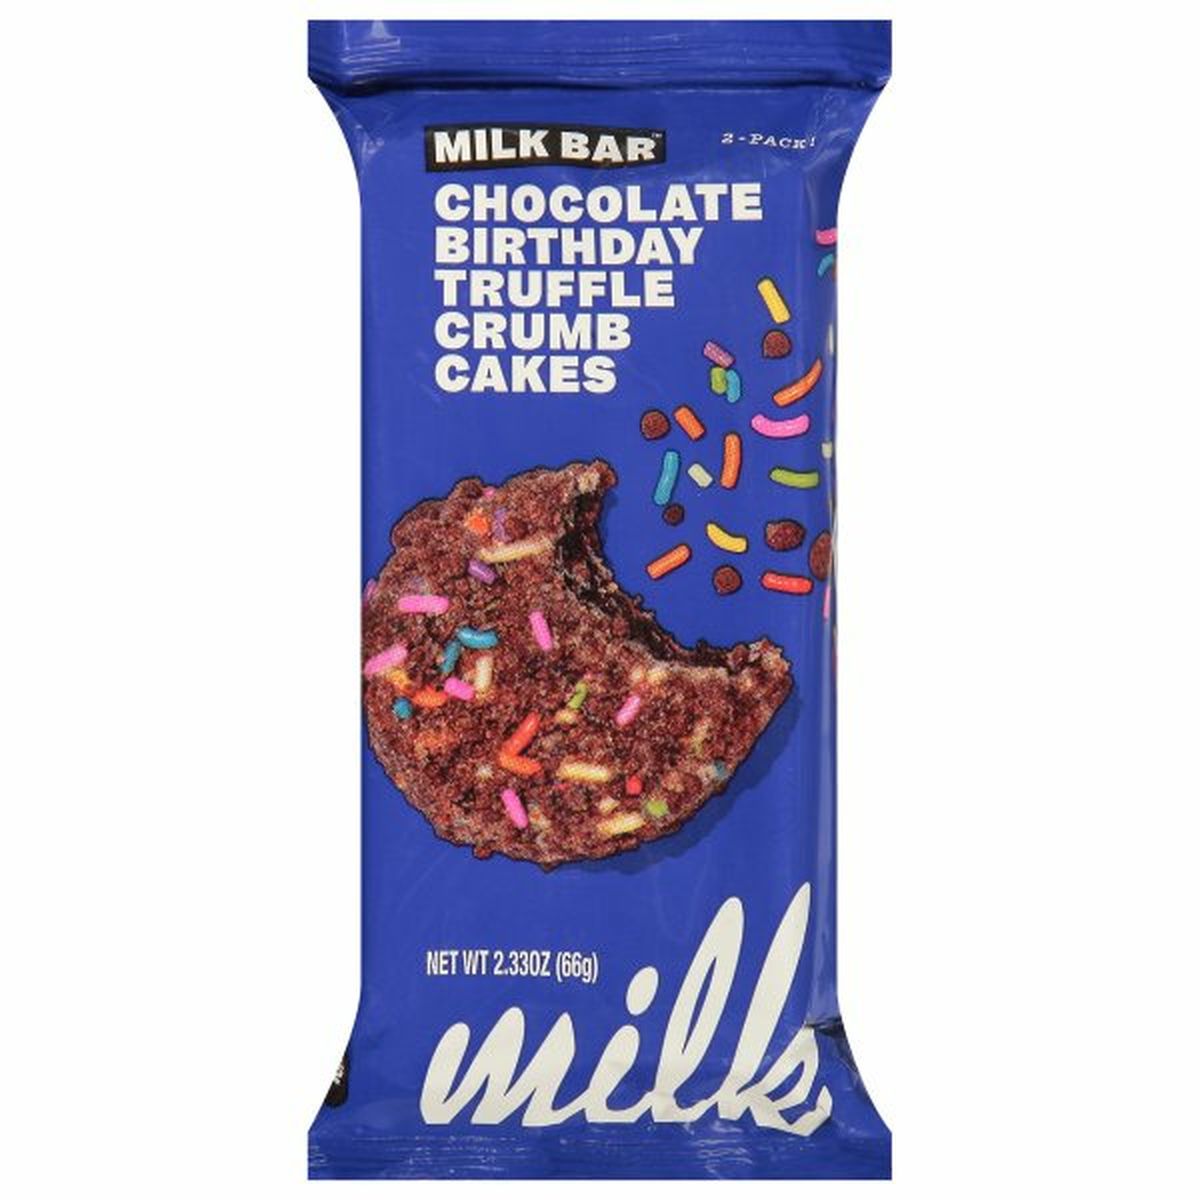 Calories in Milk Bar Crumb Cakes, Chocolate Birthday Truffle, 2-Pack